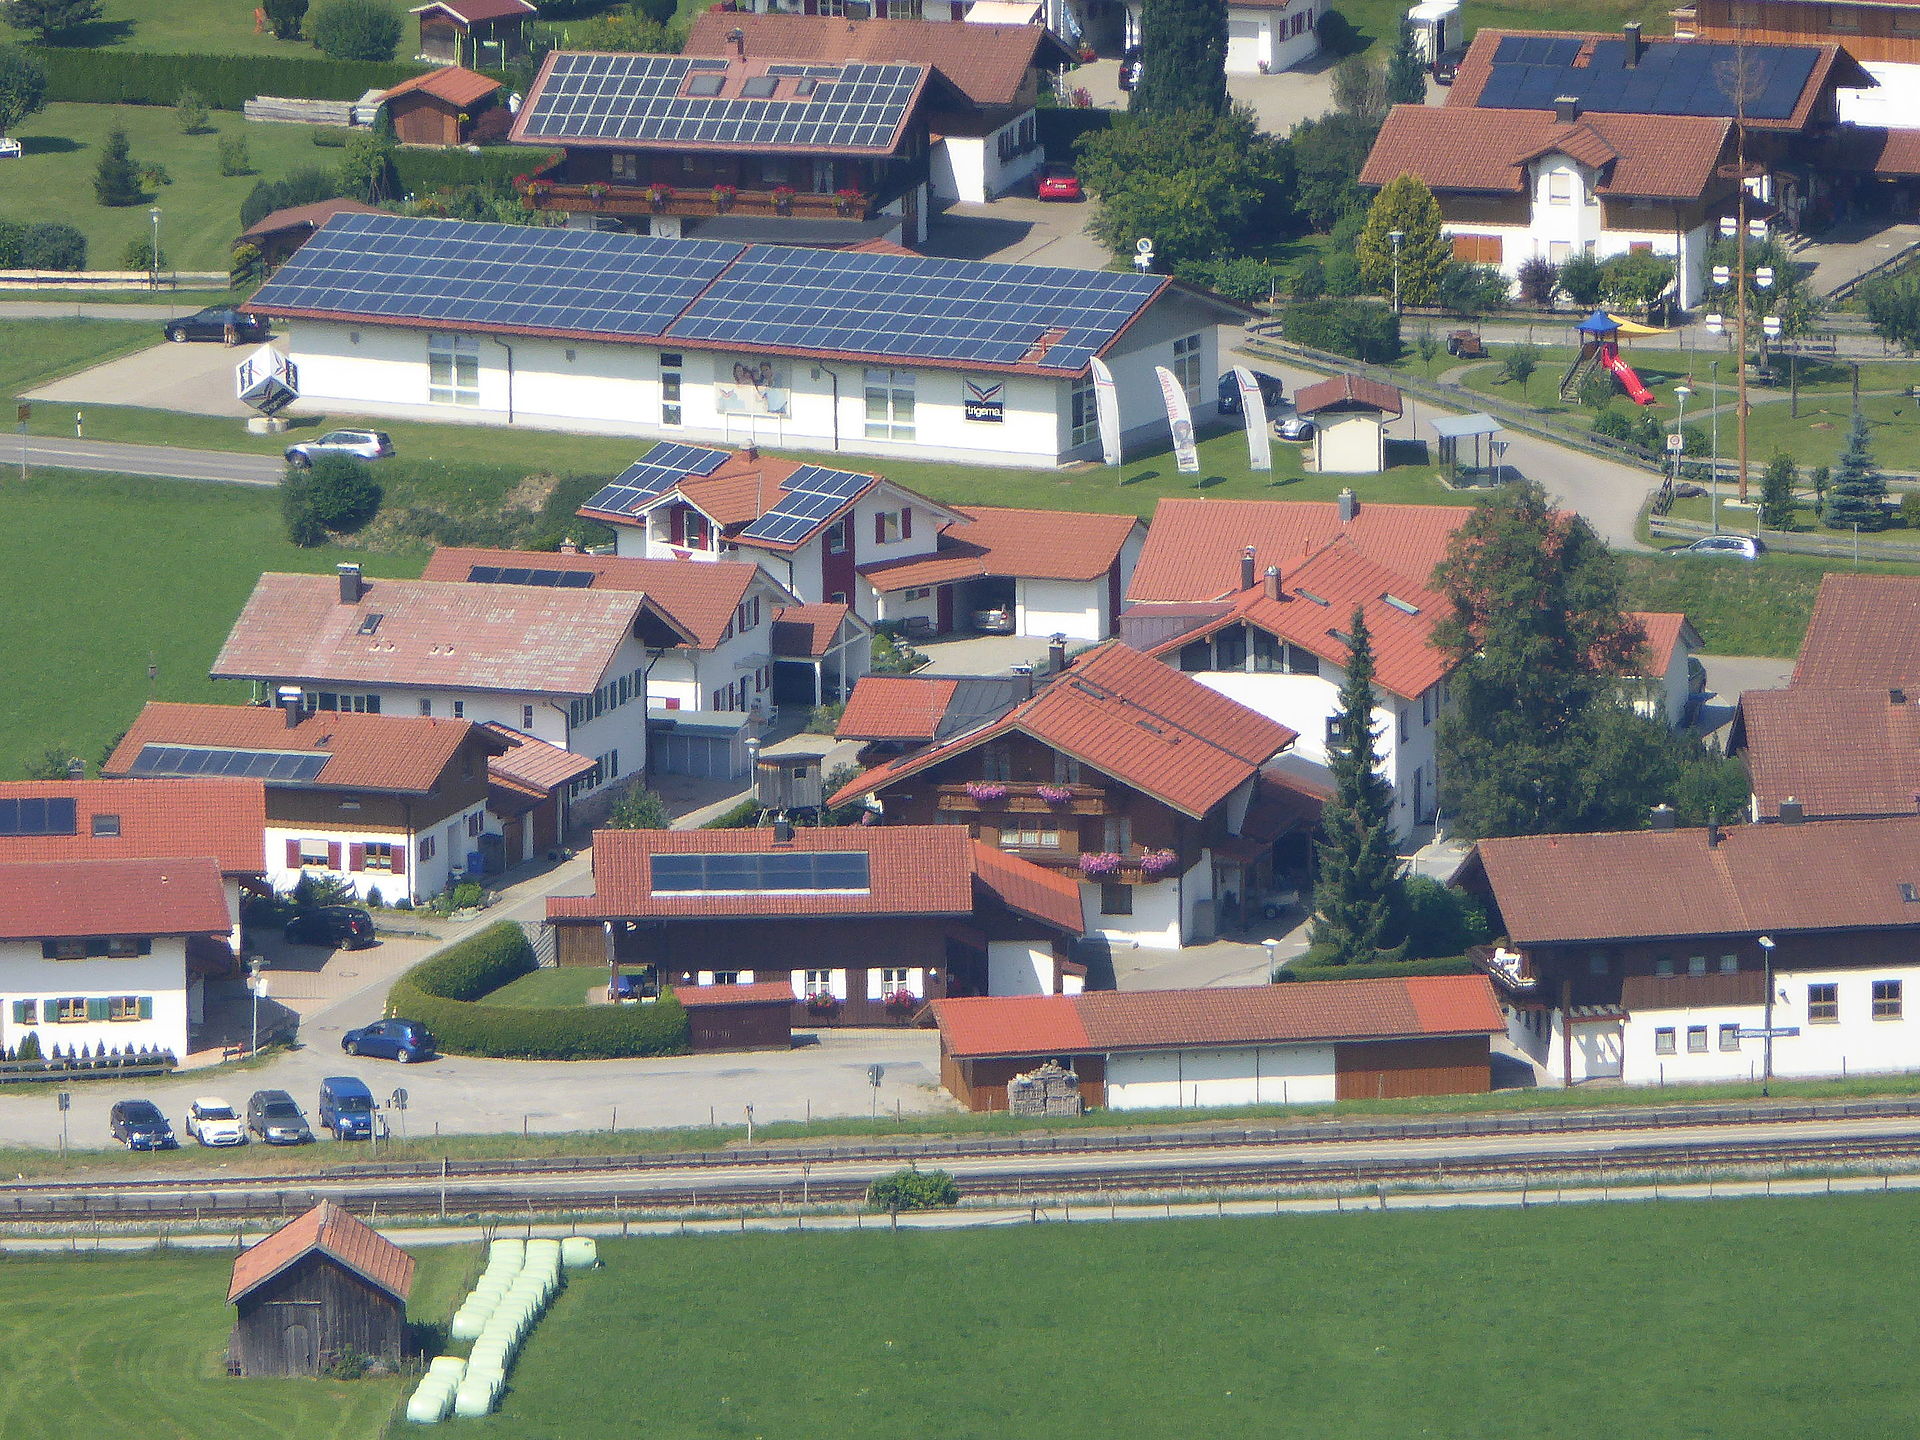 20150807_xl_P1010973_Erneuerbare_Energien_in_Oberstdorf_Photovoltaik-Solaranlagen